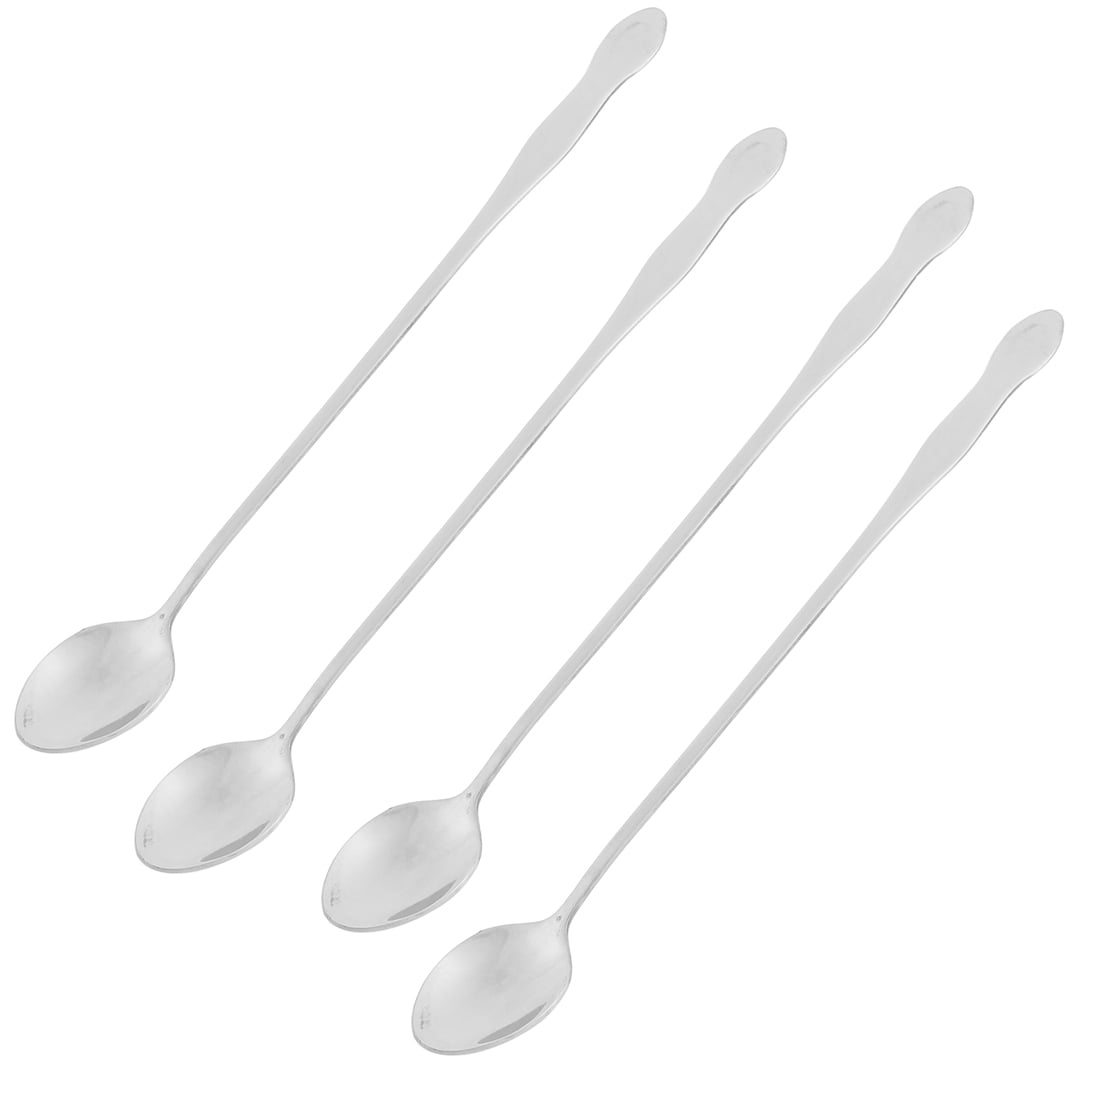 Honana Stainless Steel Long Handle Coffee Milk Mixing Spoon Scoop Cutlery